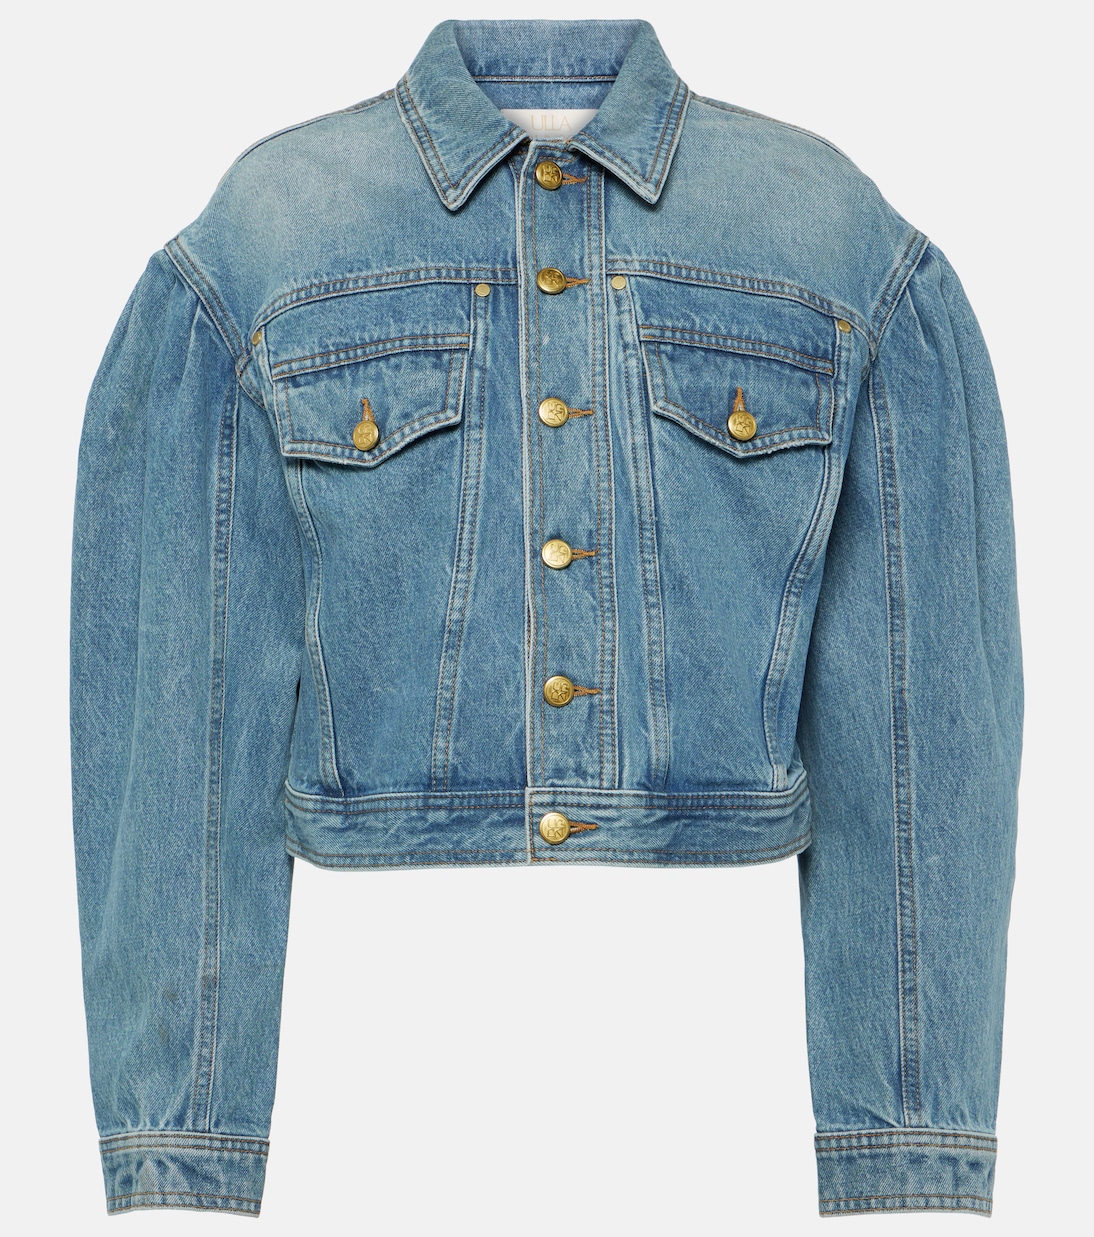 Укороченная джинсовая куртка cosette Ulla Johnson, синий